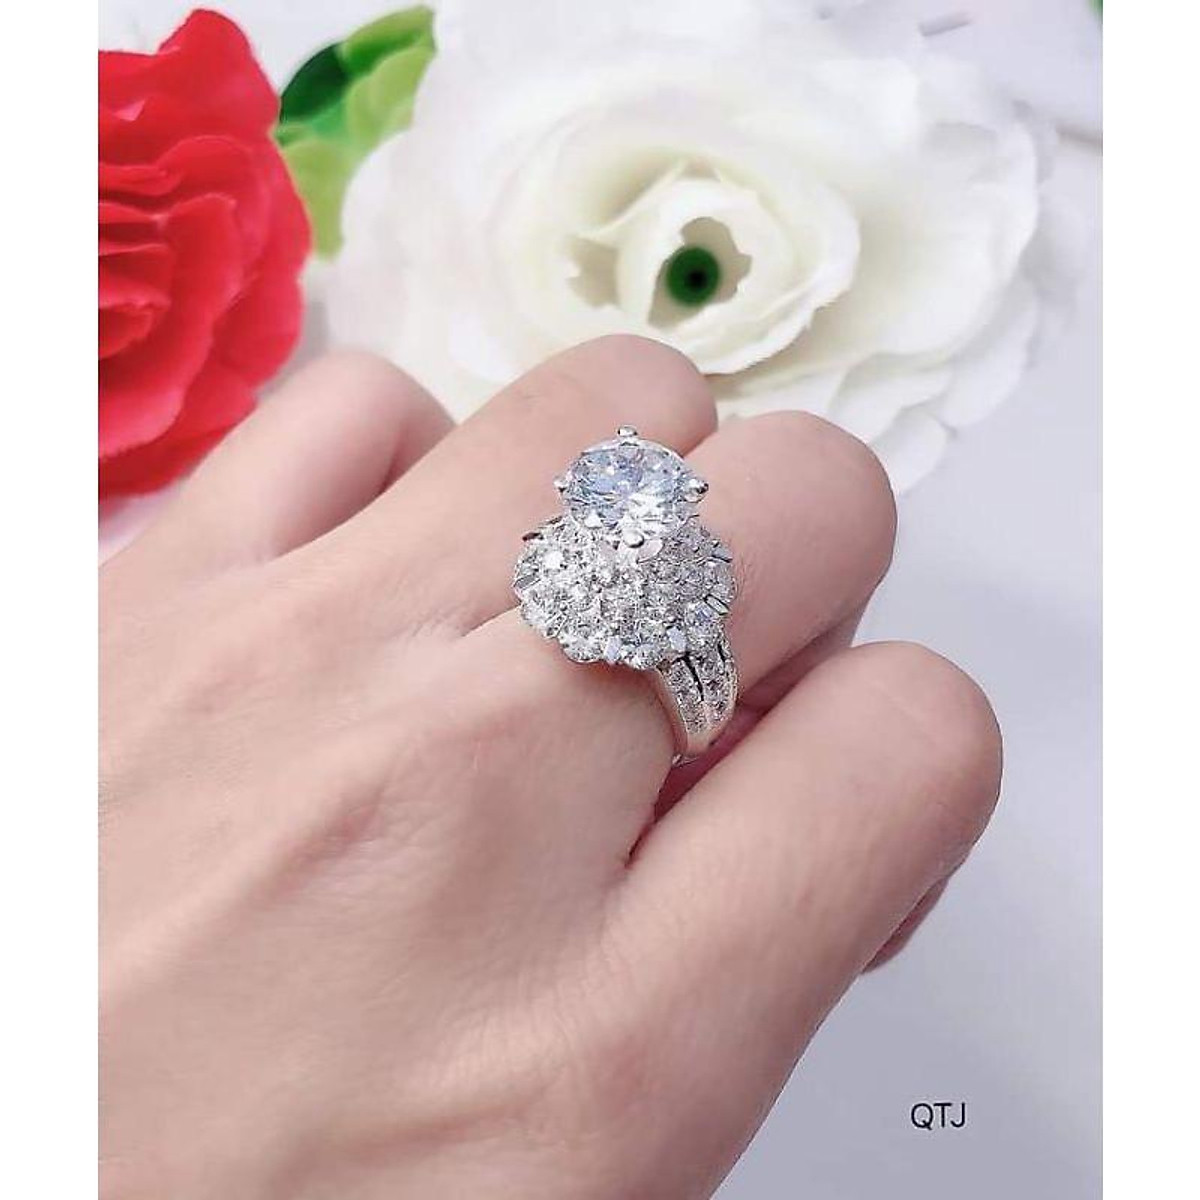 Nhẫn bạc ý đá cao sáng đẹp như Kim cương,thiết kế Sang chảnh hiện đại,